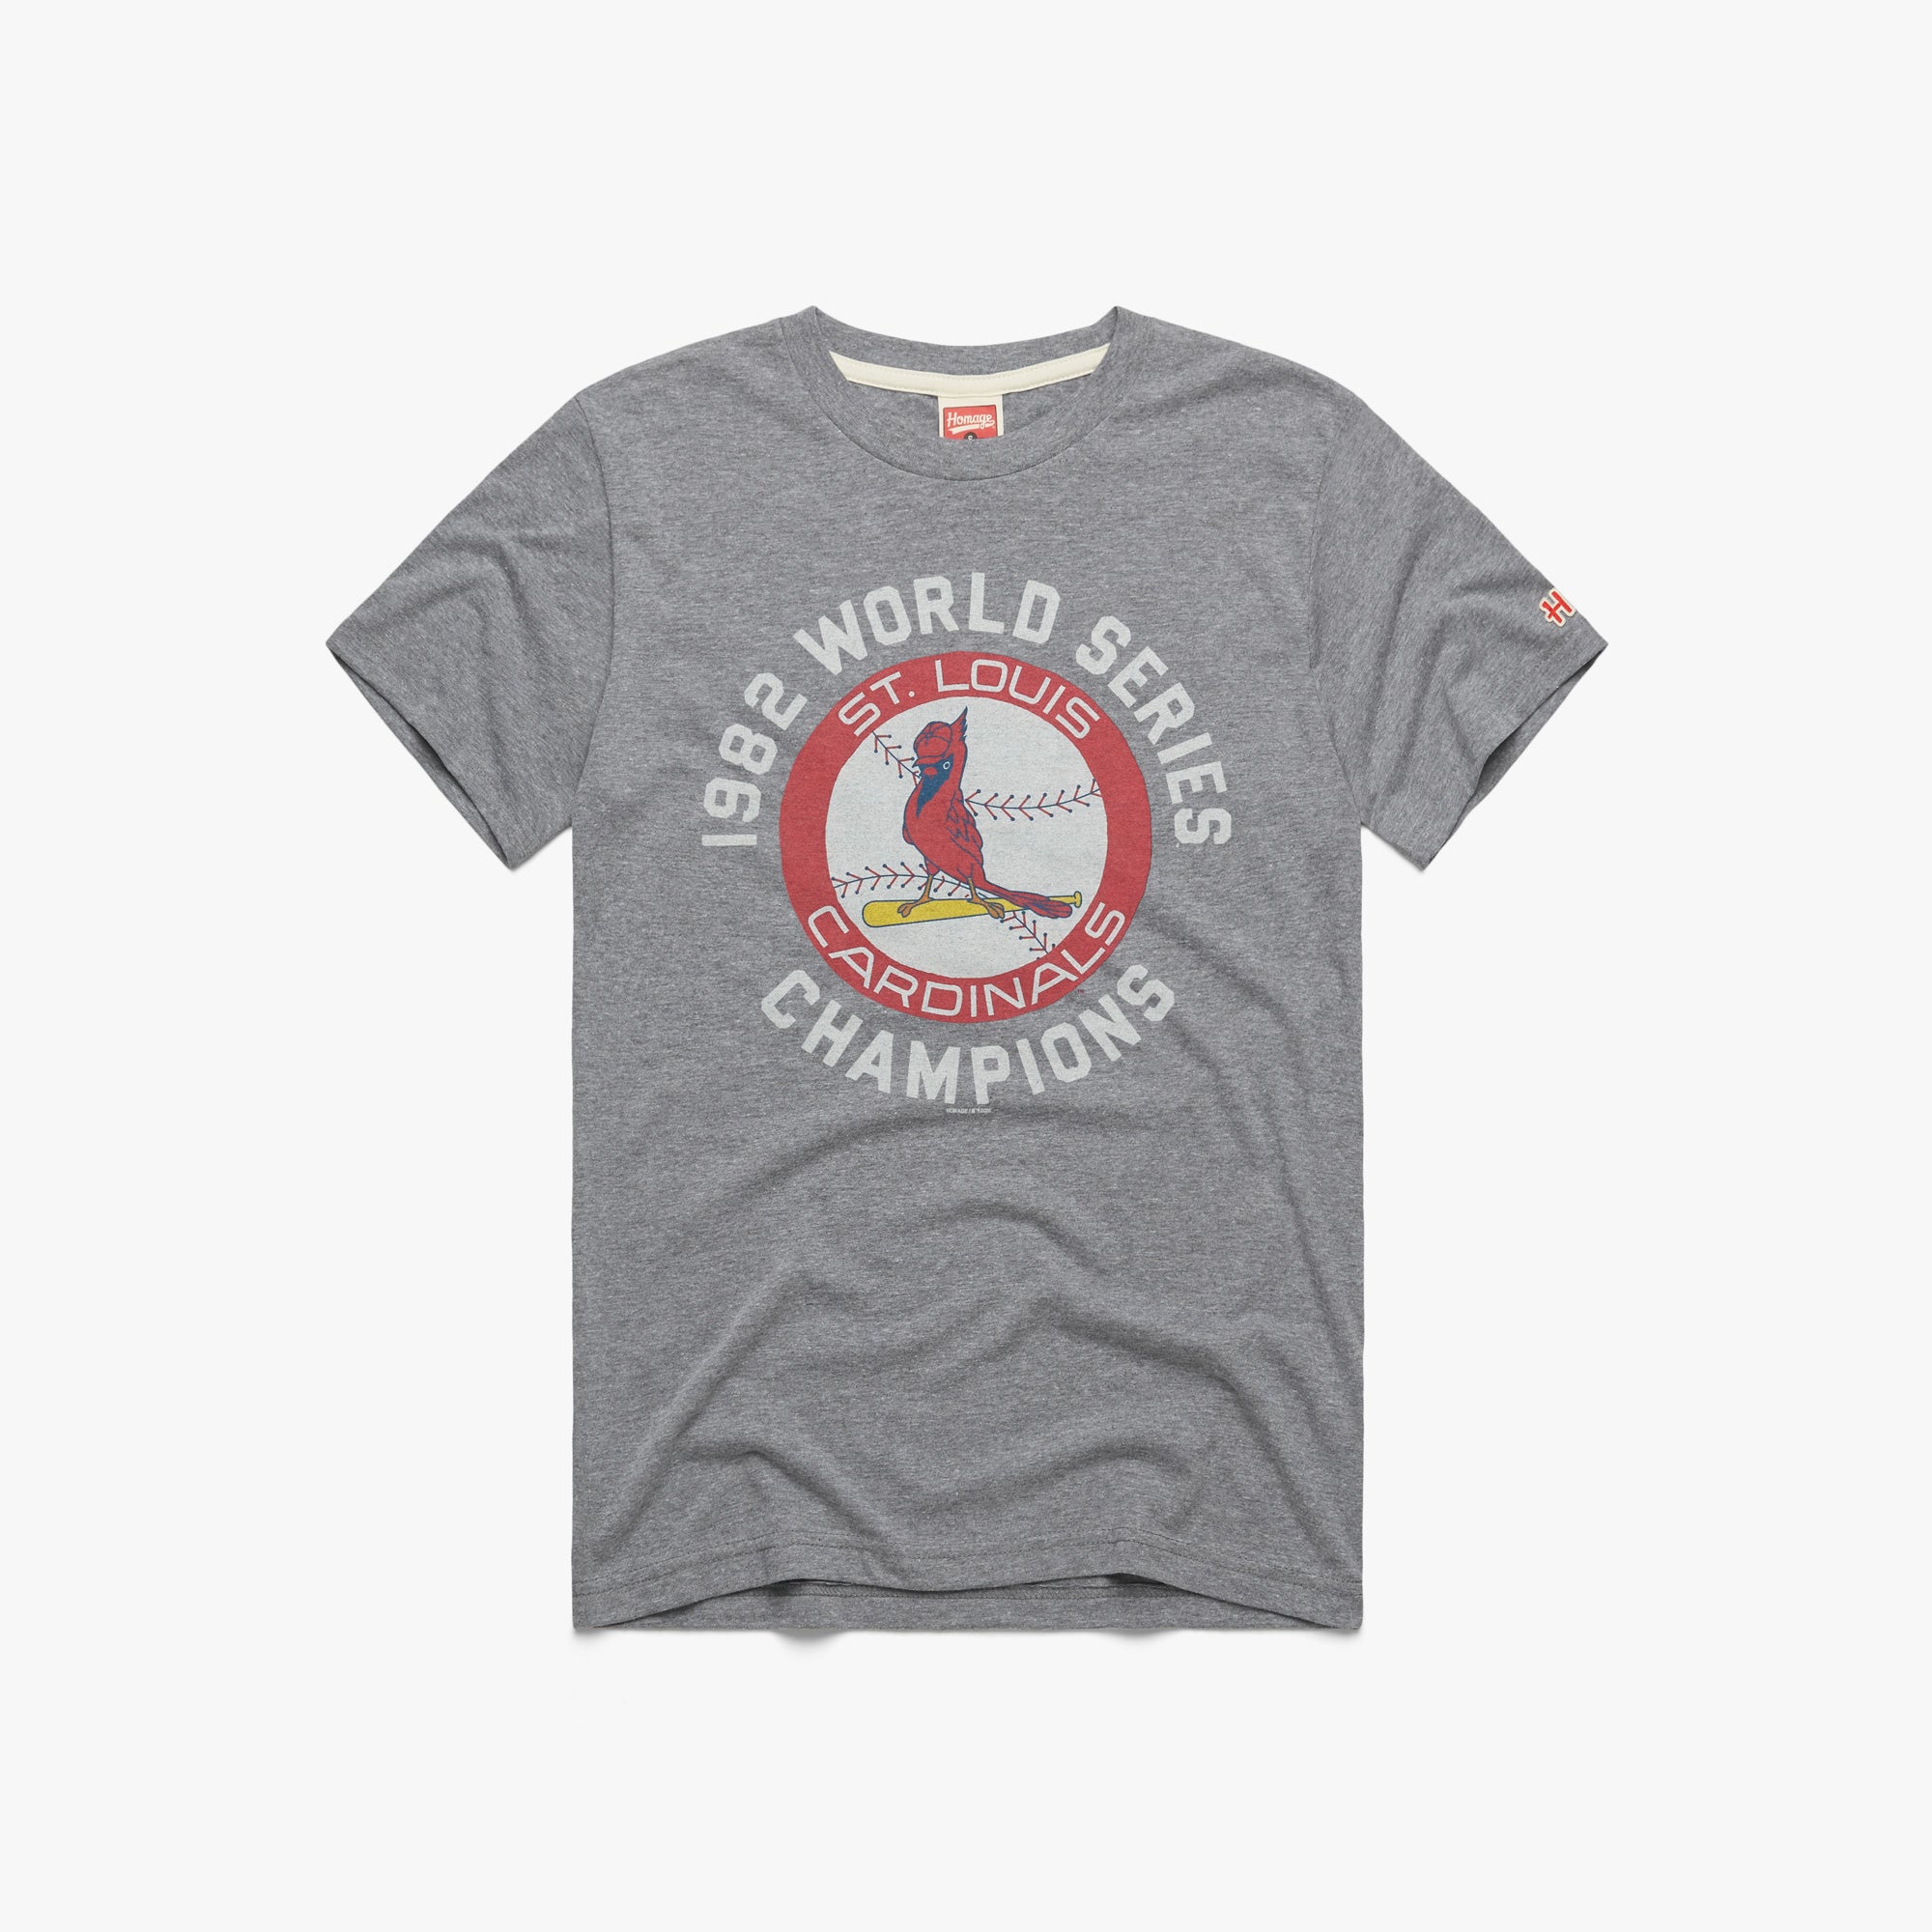 Vintage NWT St. Louis Cardinals T-shirt Size Large 